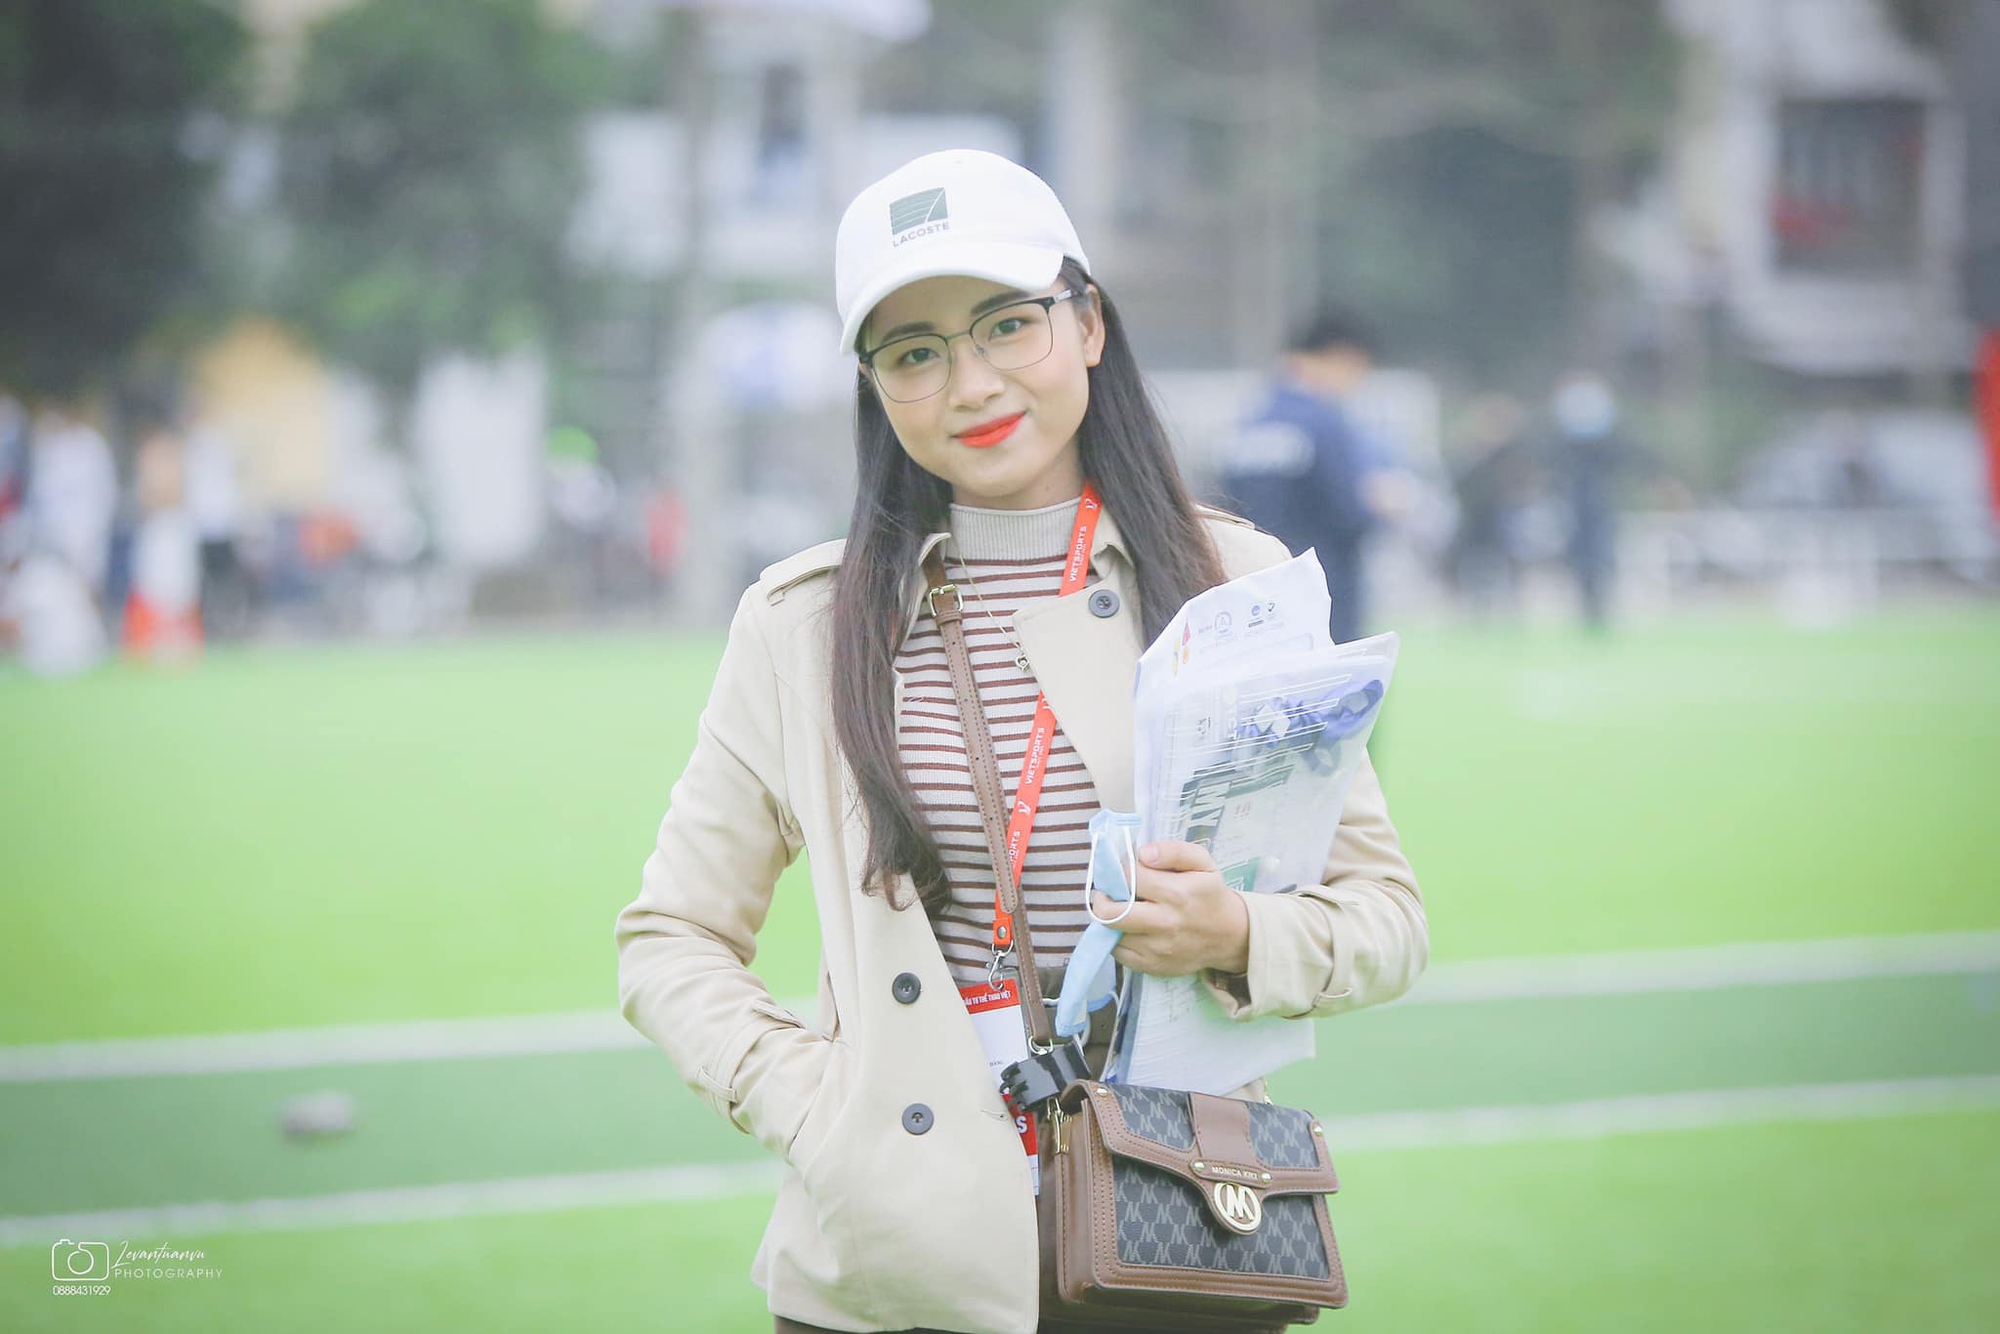 FC Girls Bắc Giang: Cầu nối để những cô gái đam mê bóng đá được xích lại gần nhau   - Ảnh 1.